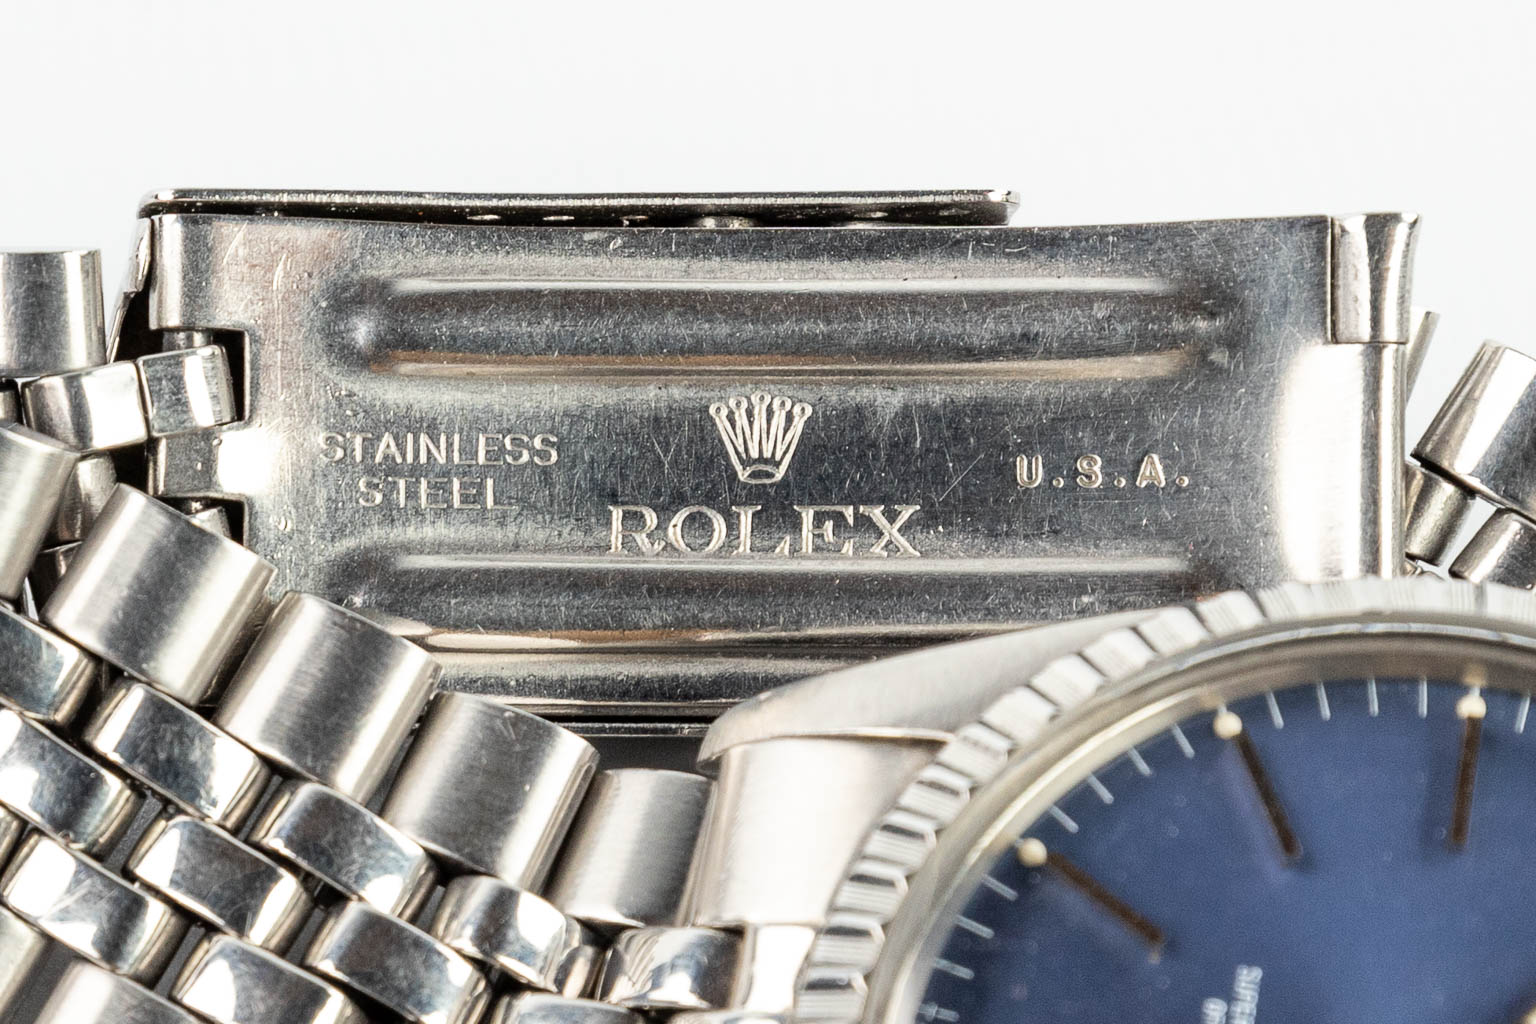 Een Rolex Oyster Perpetual Datejust herenhorloge met blauwe wijzerplaat 1978. 